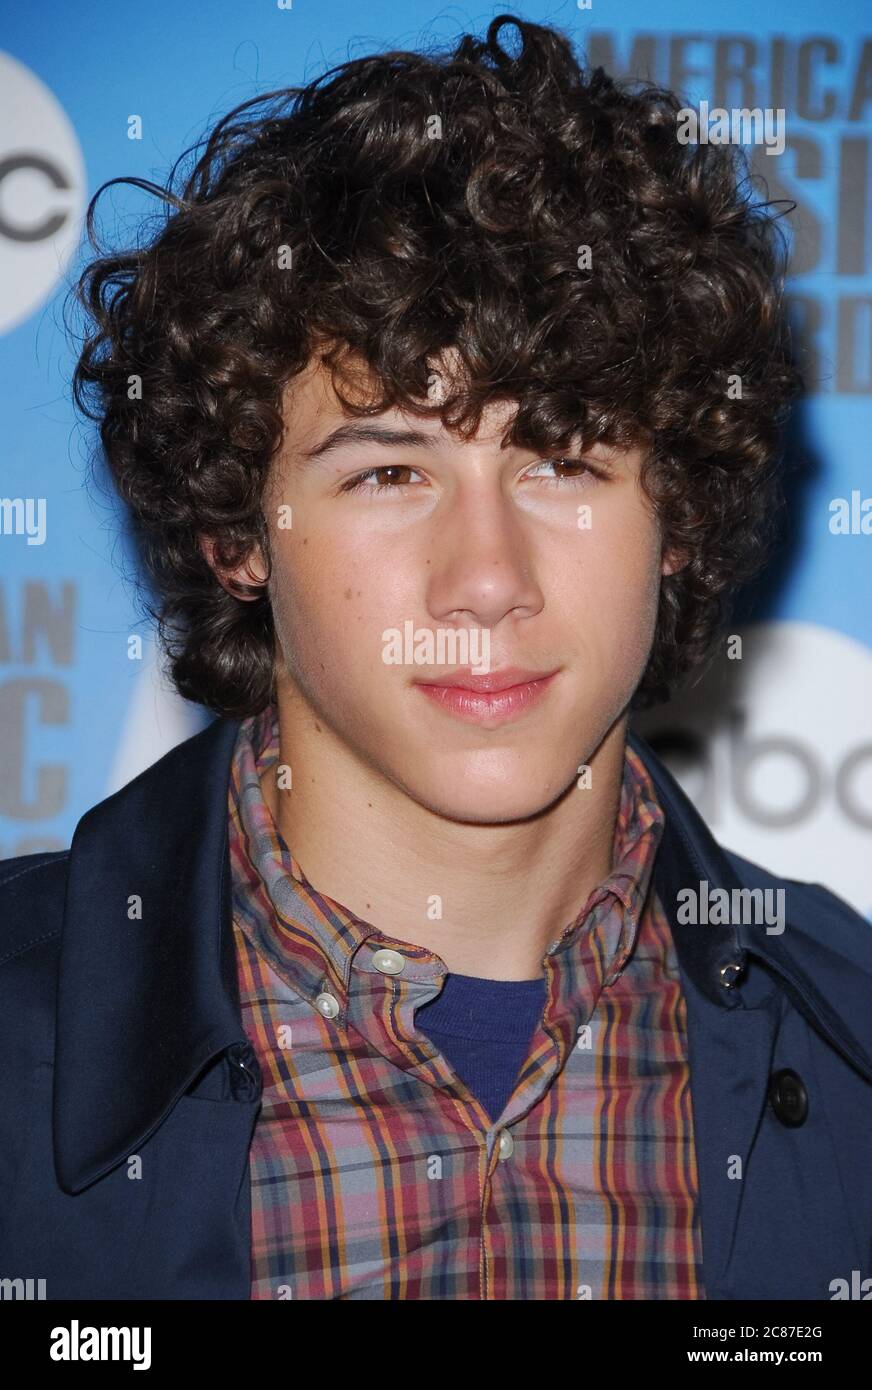 Nick Jonas of the Jonas Brothers at the 